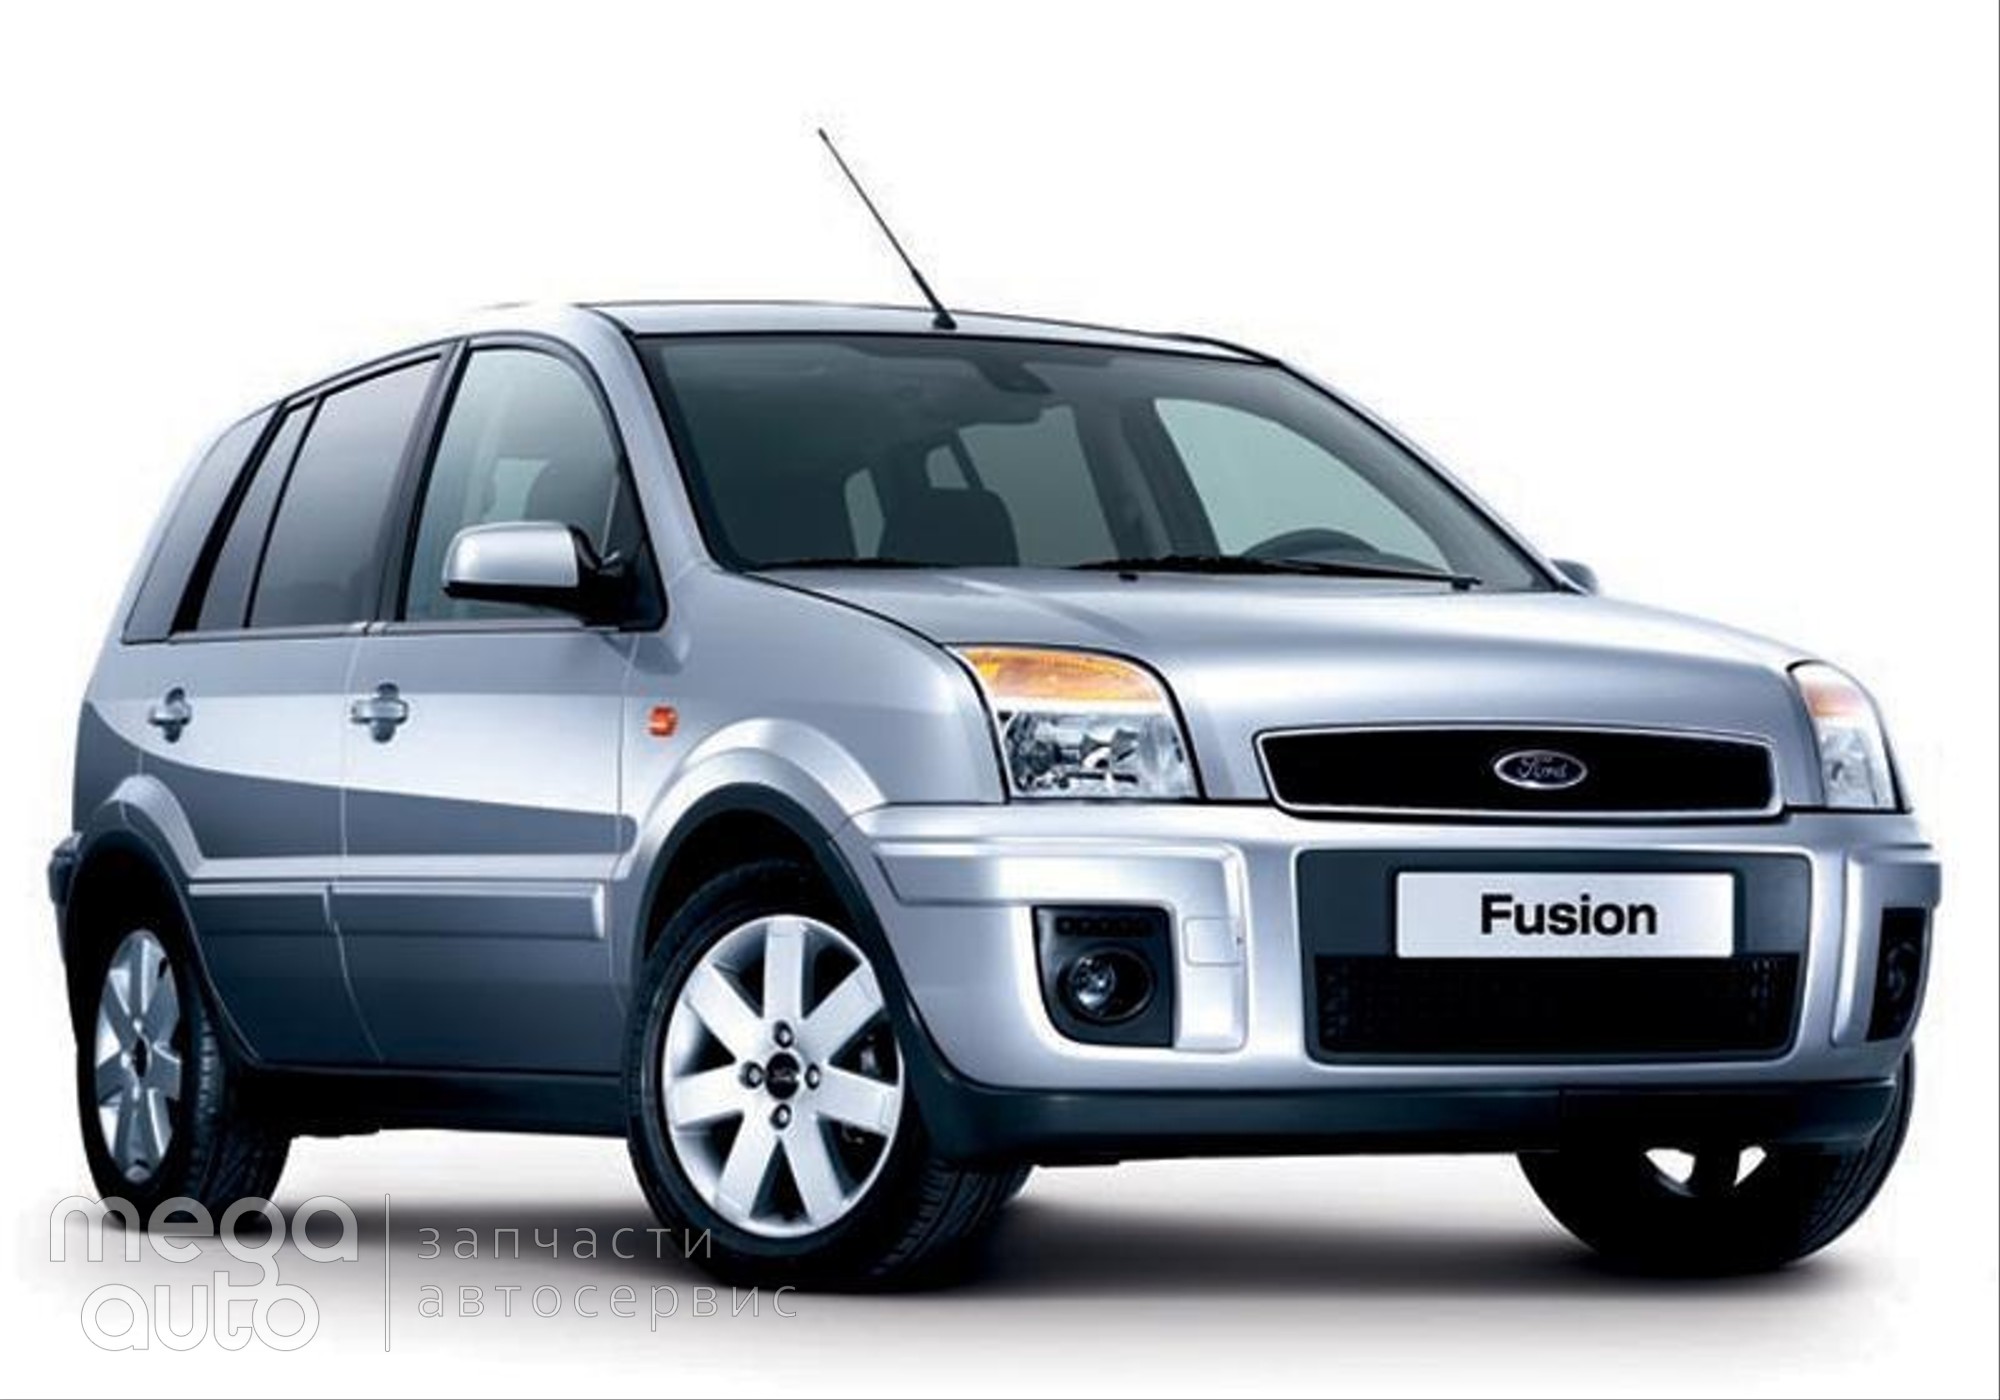 Ford Fusion 2008 г. в разборе